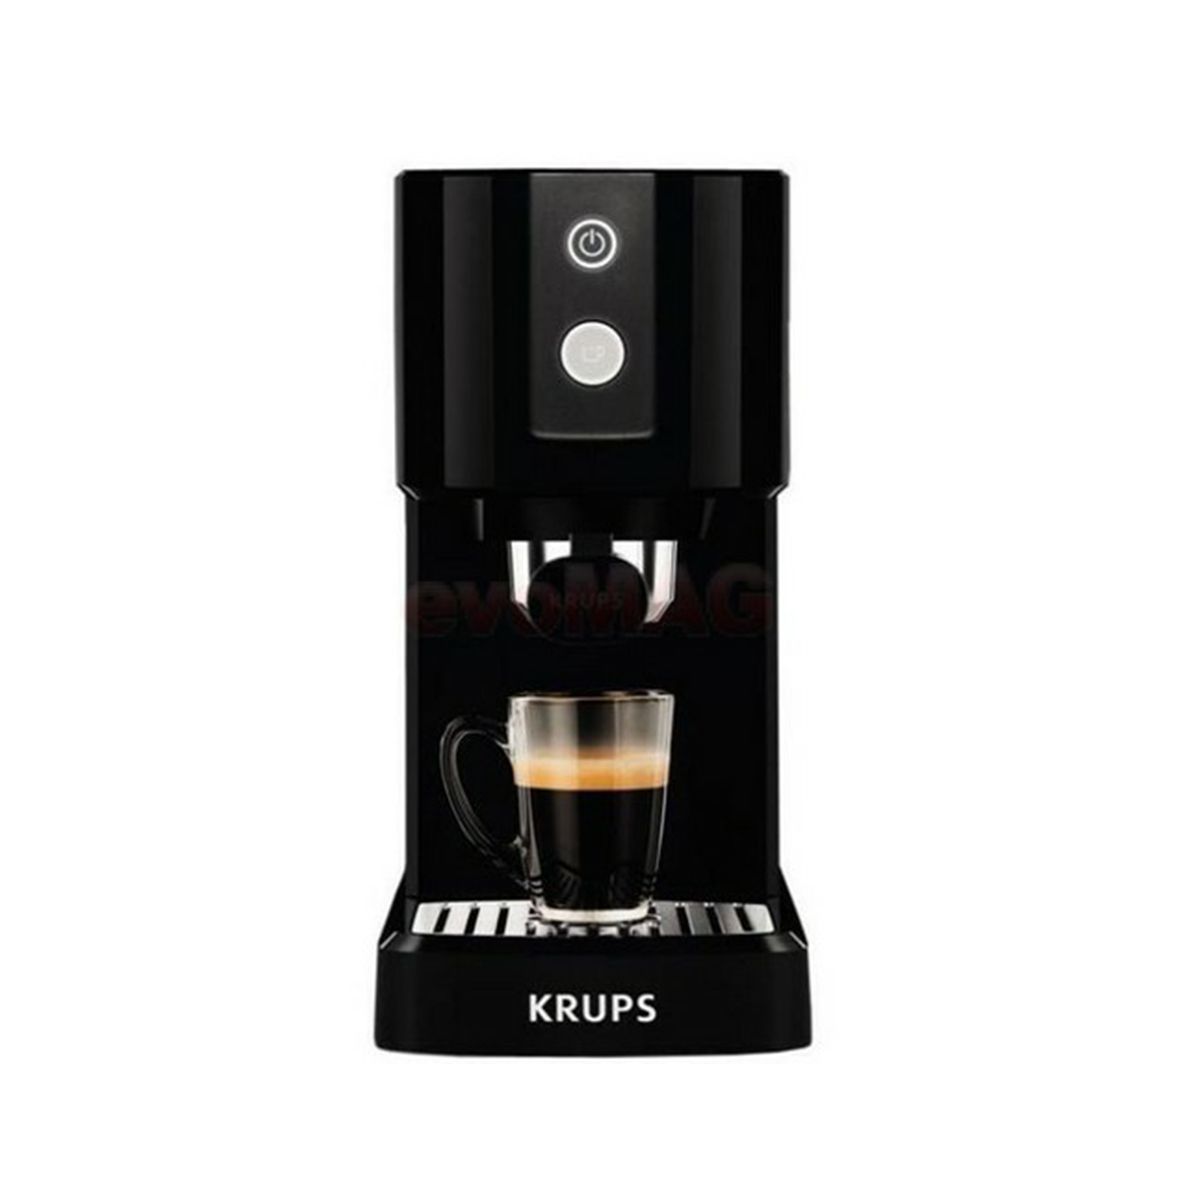 KRUPS เครื่องชงกาแฟ KRUPS รุ่น XP3410